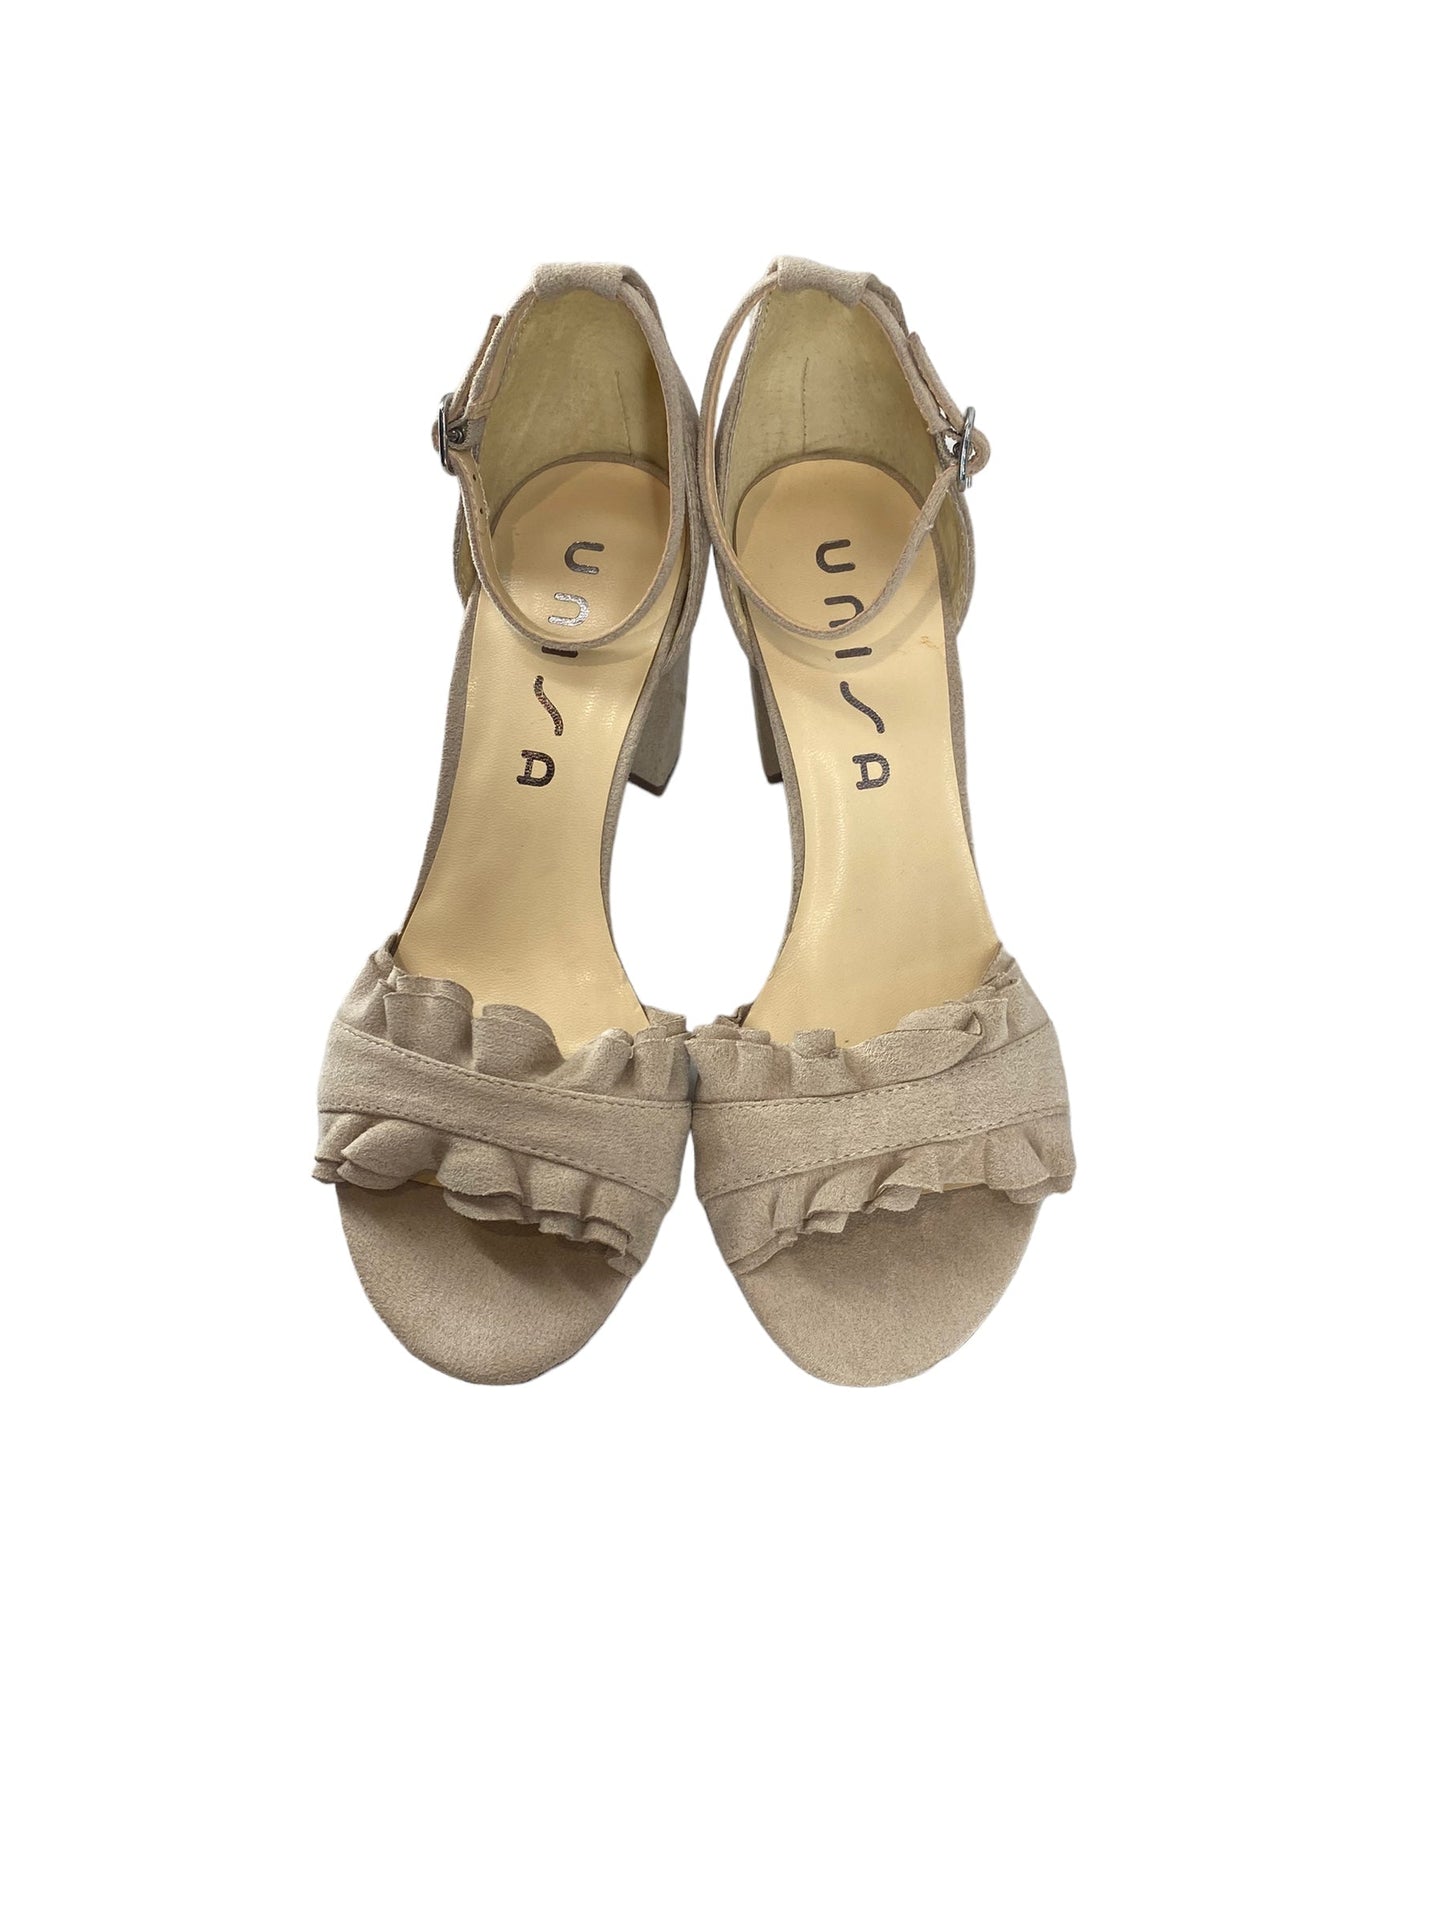 Sandals Heels Block By Unisa  Size: 7